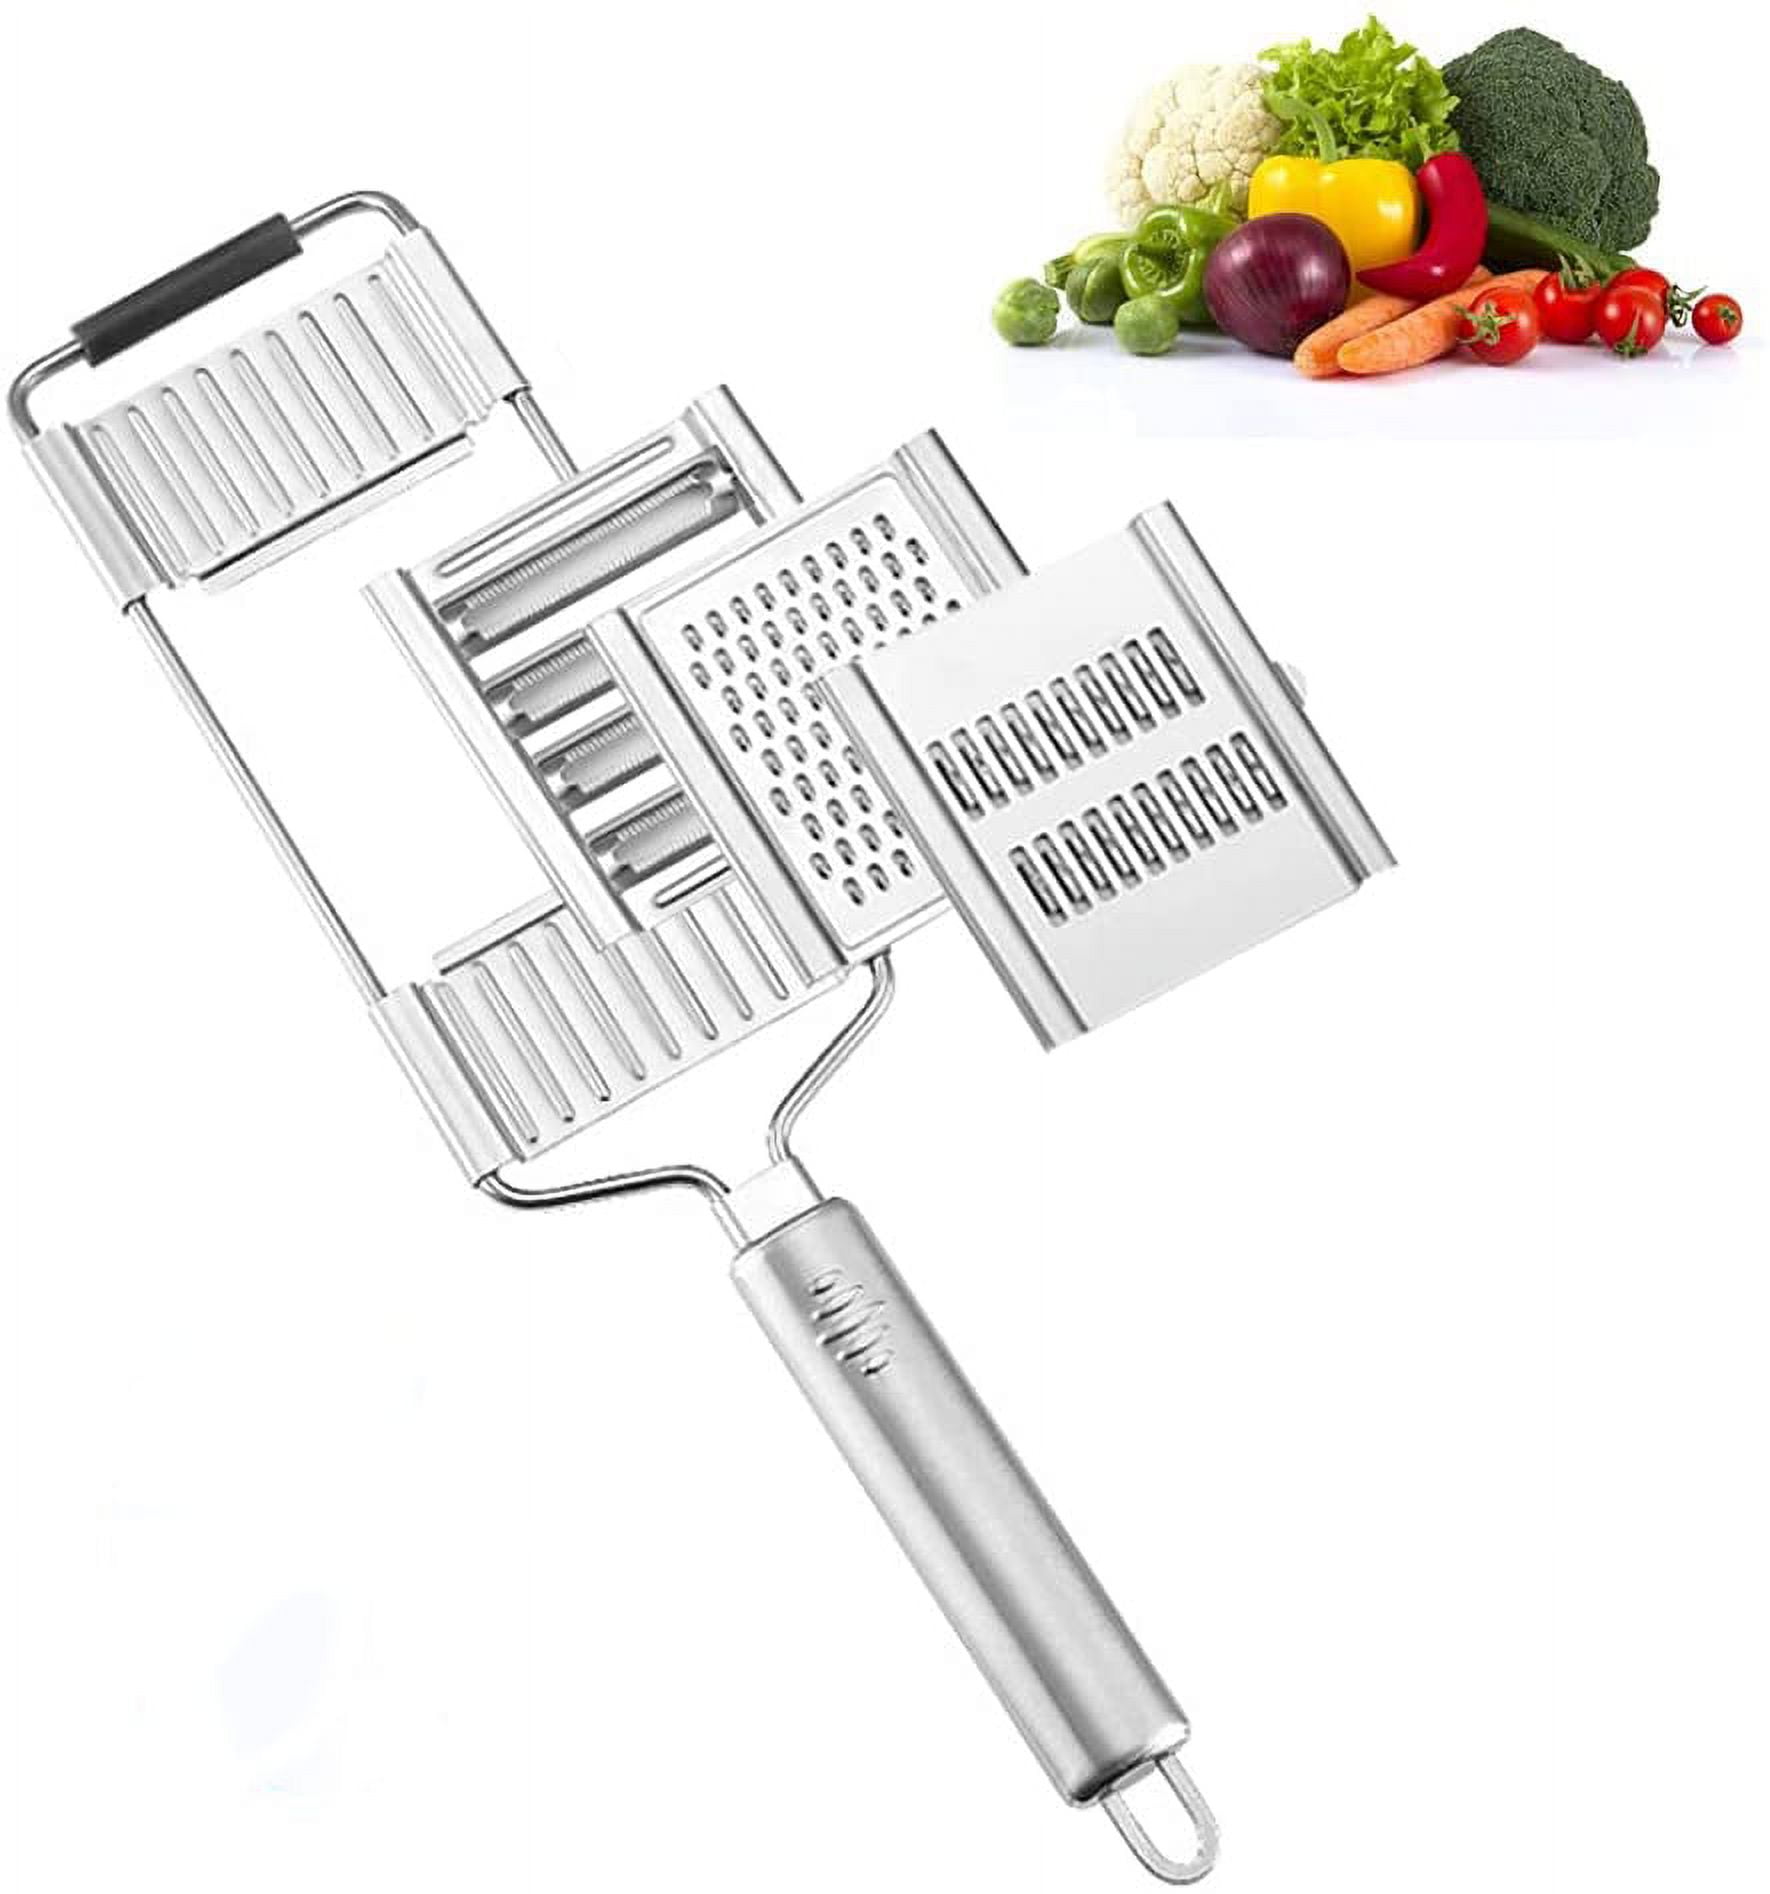 New Vegetable Shredder Cutter Portable Stainless Steel Slicer Manual Fruit  Carrot Potato Grater Multi Purpose Home Kitchen Tools